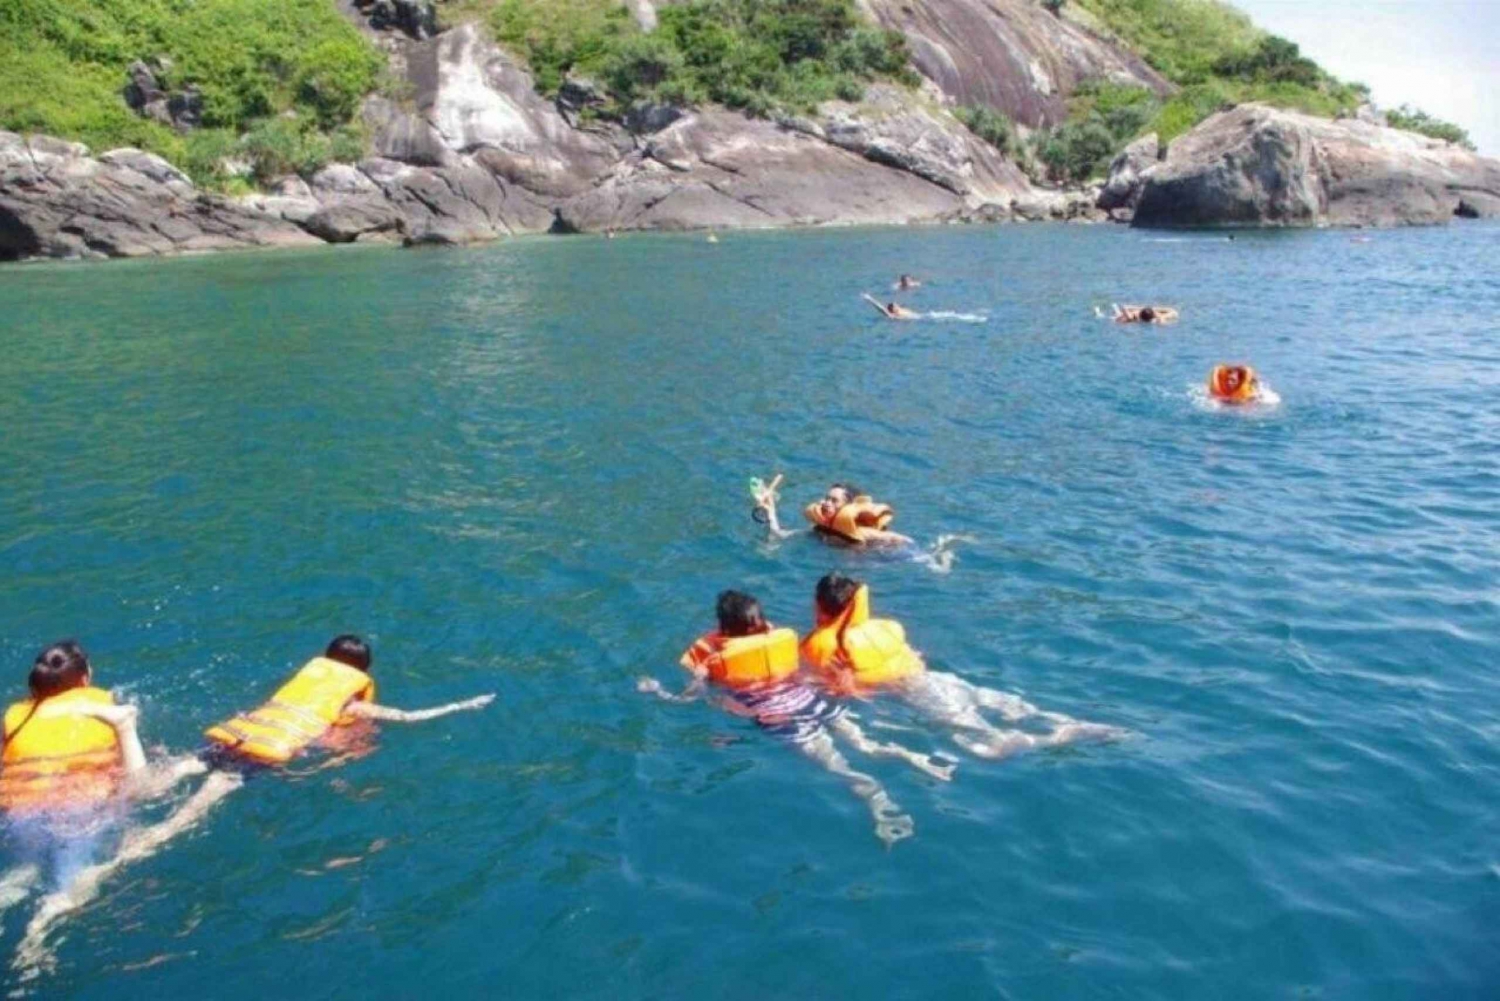 Passeio de lancha com snorkel pelas Ilhas Cham: Hoi An / Da Nang